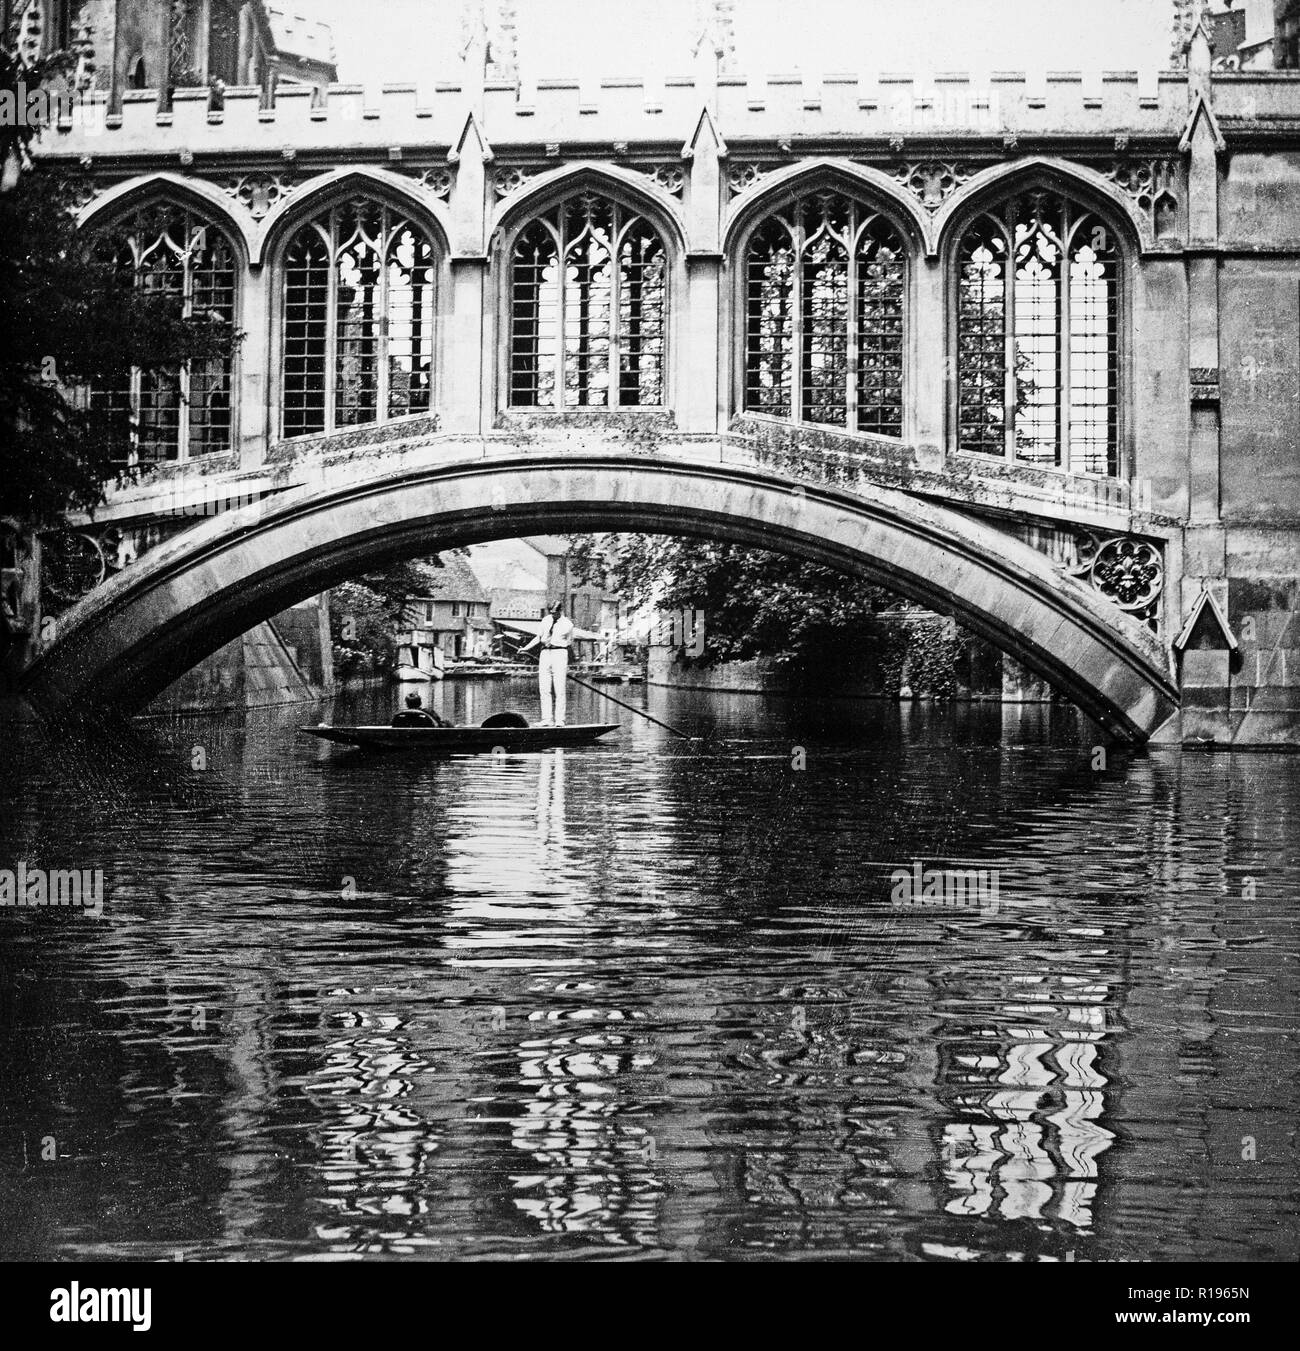 Schwarz und Weiß vintage Foto 1924 zeigt die Brücke der Seufzer, eine überdachte Brücke am St. John's College, Cambridge, England. Er wurde 1831 gebaut und überquert den Fluss Cam zwischen der Hochschule dritten Hof und neuen Gerichts. Der Architekt war Henry Hutchinson. Foto zeigt ein Paar in Punt, die traditionelle Boot auf dem Fluss, mit einem Mann und mit einer Stange. Stockfoto